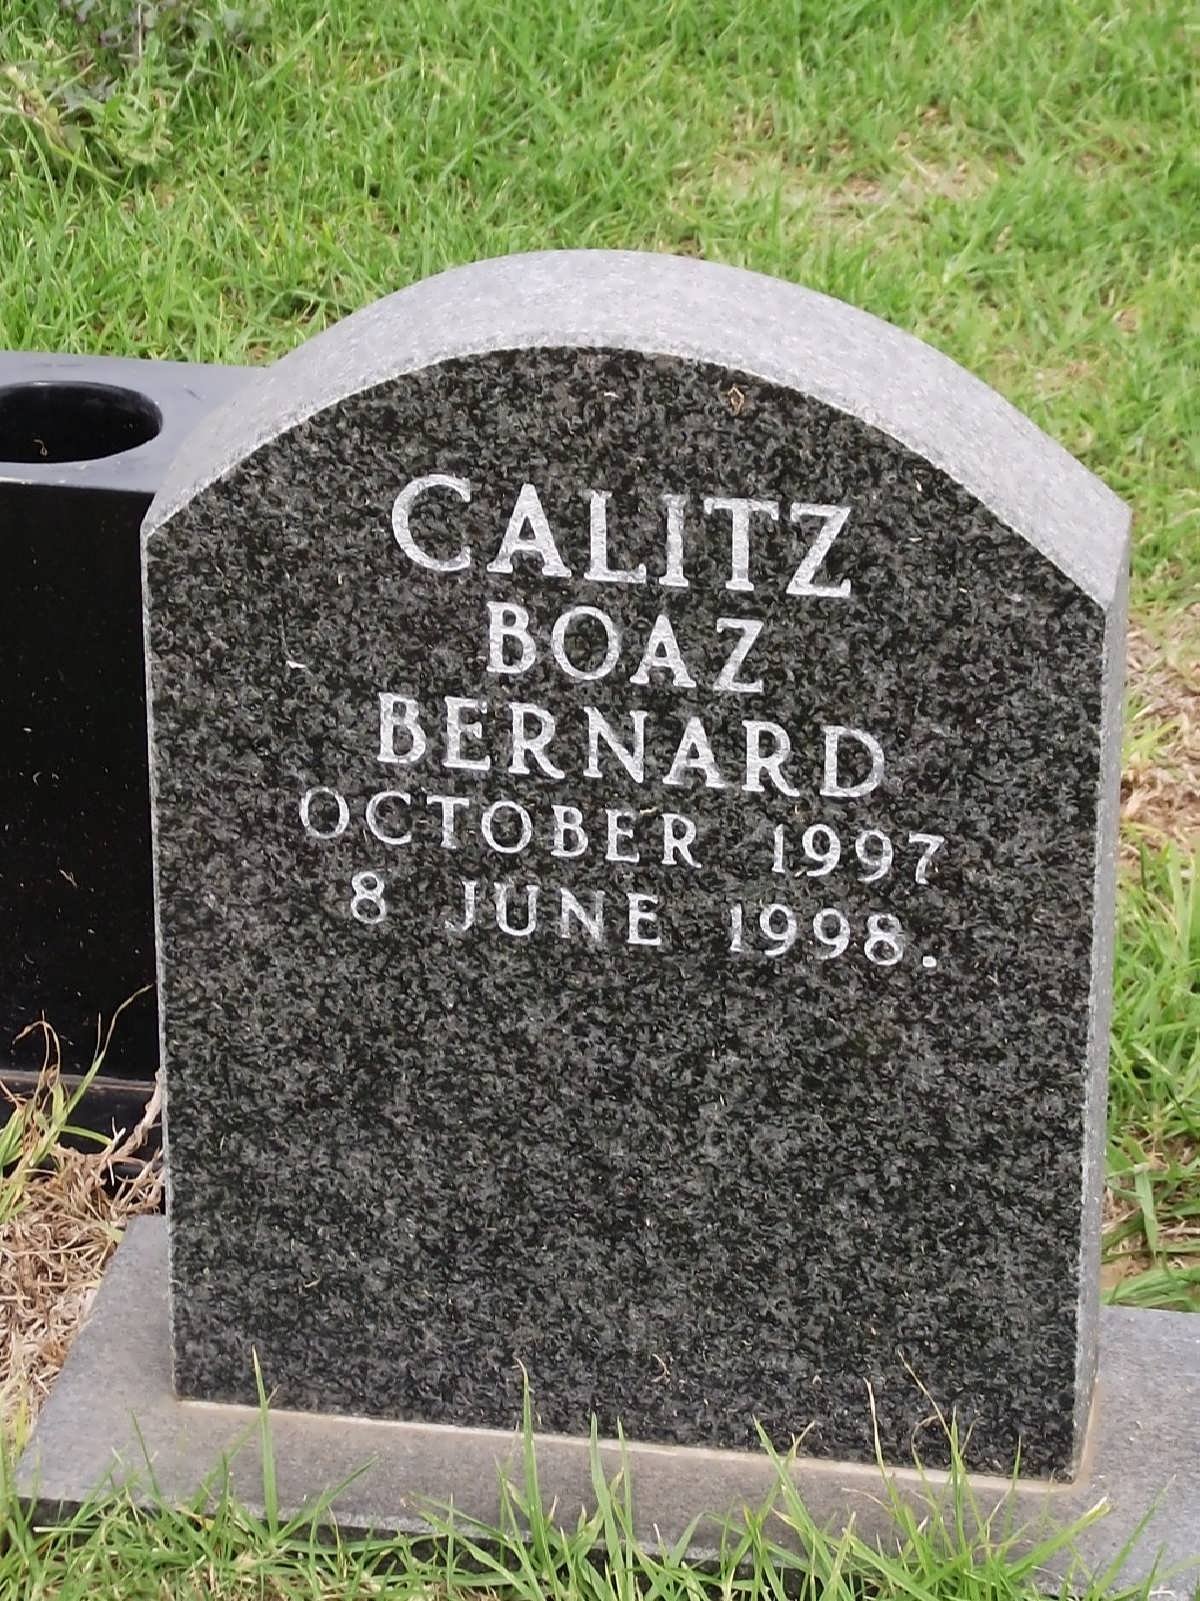 CALITZ Boaz Bernard 1997-1998